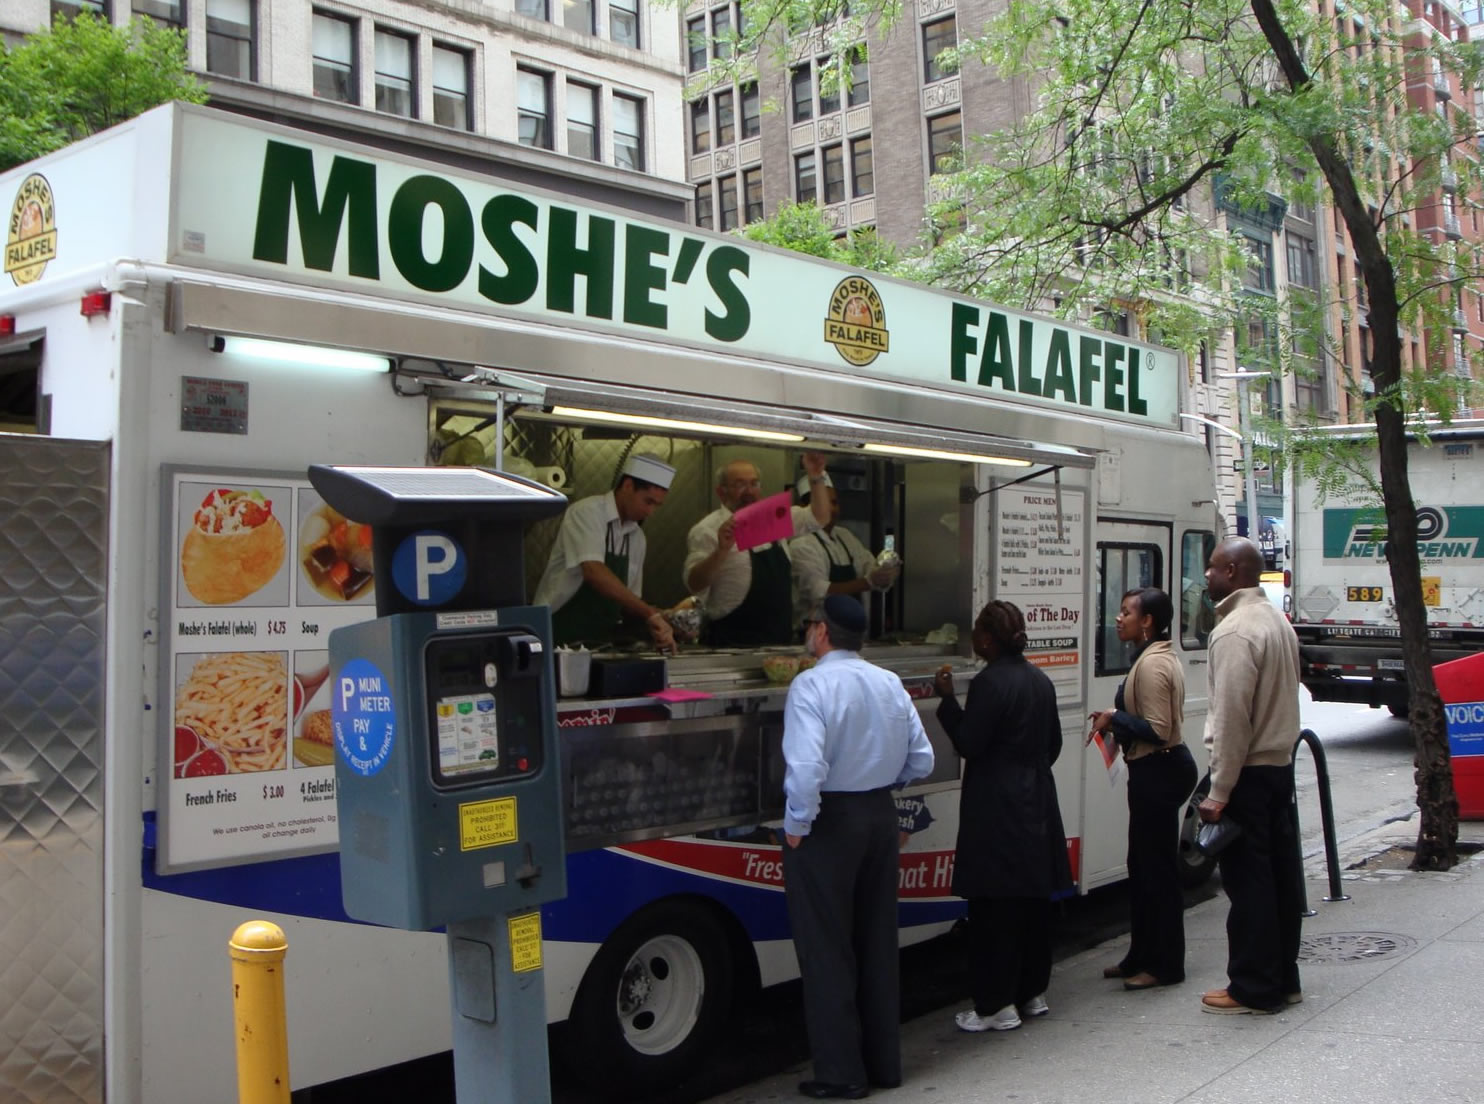 Moche's Falafel truck in street